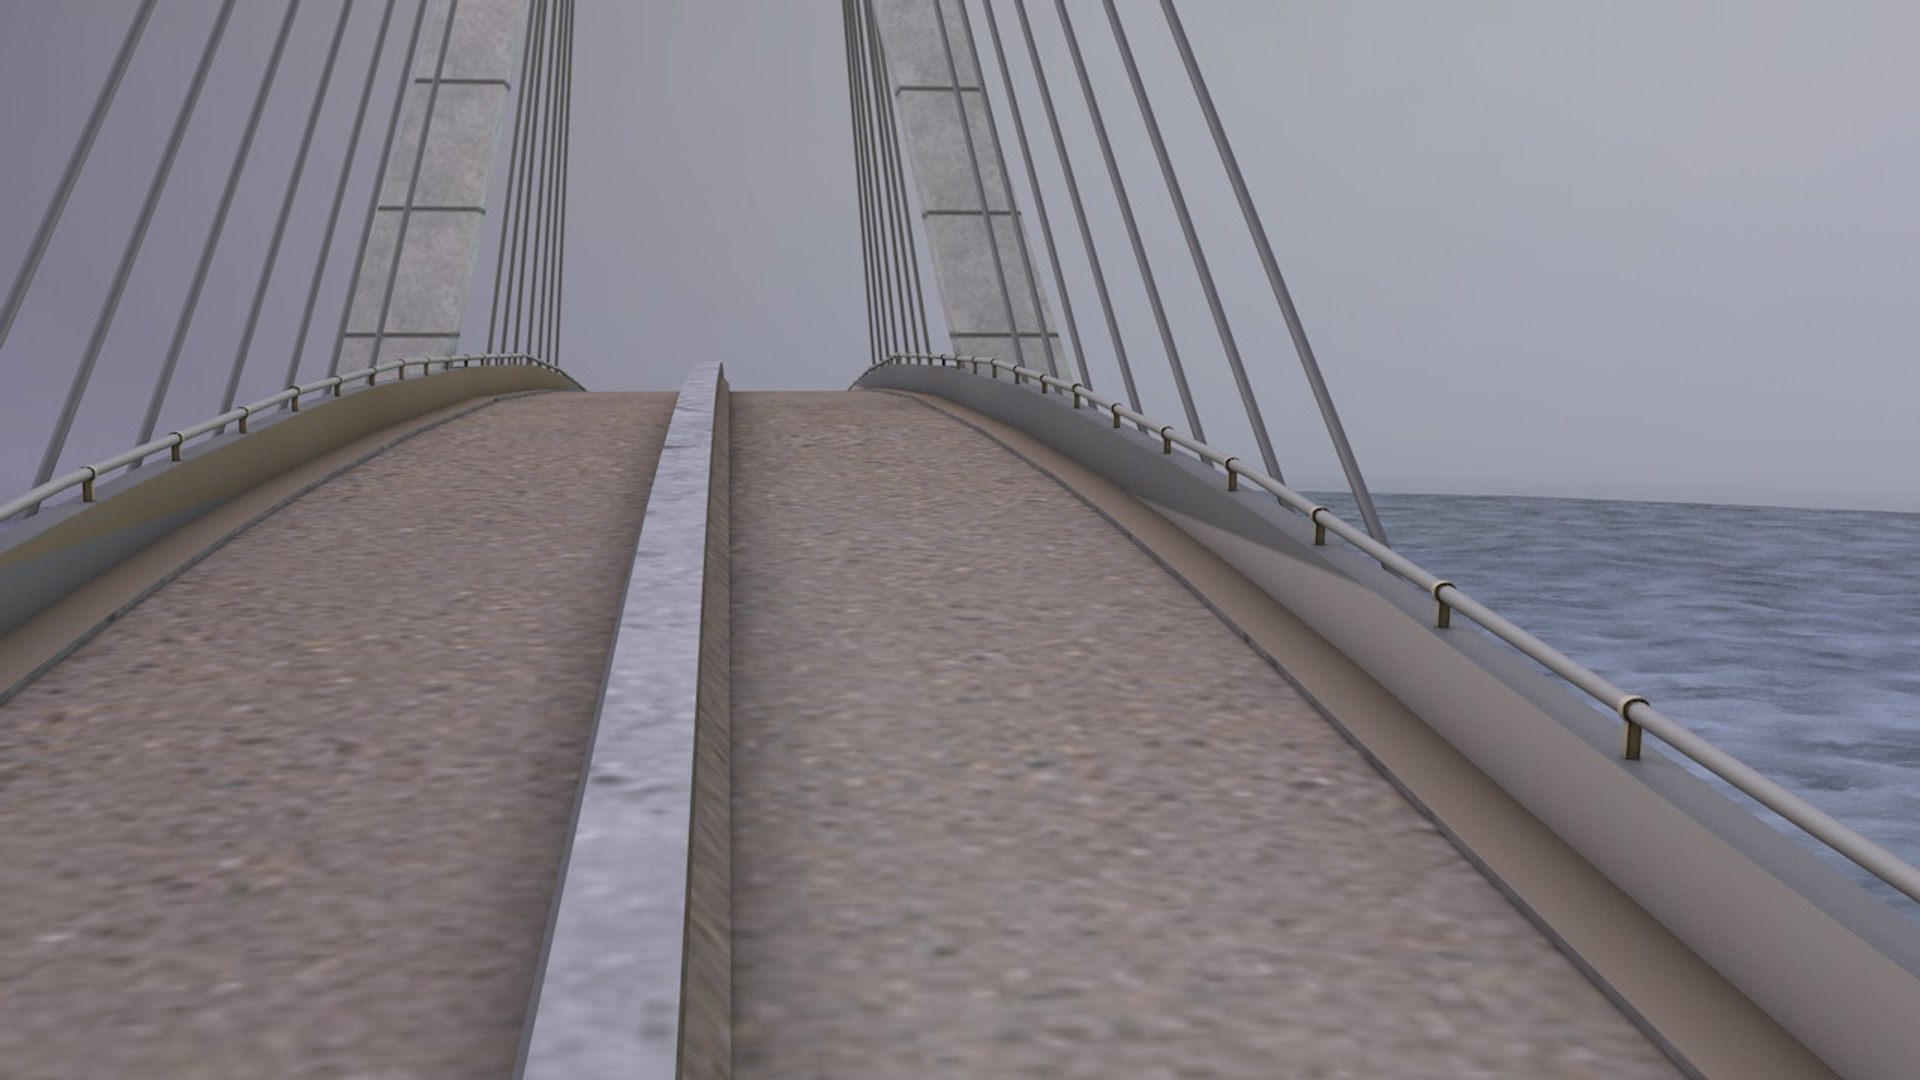 Design suspension bridge details 3D model - TurboSquid 1386709